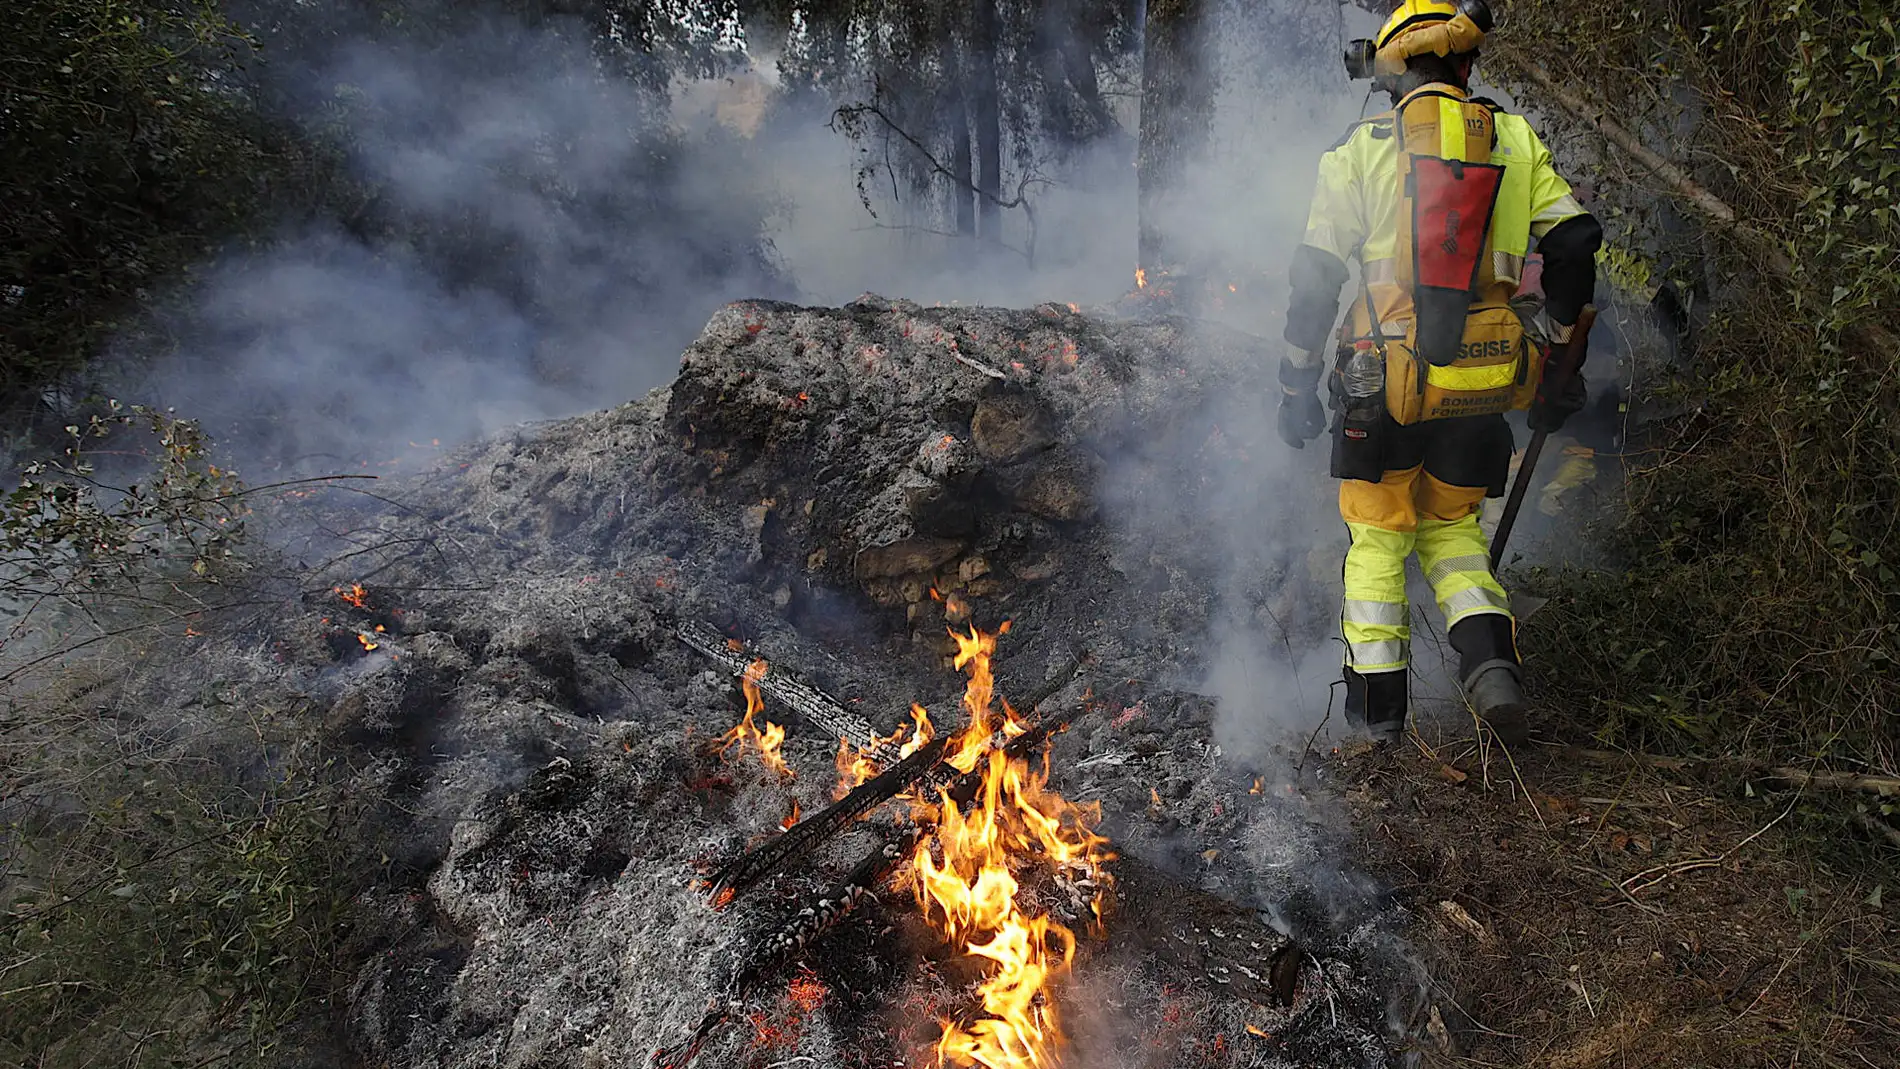 El incendio de Montitxelvo quema ya 2580 hectáreas y apuntan al "factor humano" como posible causa